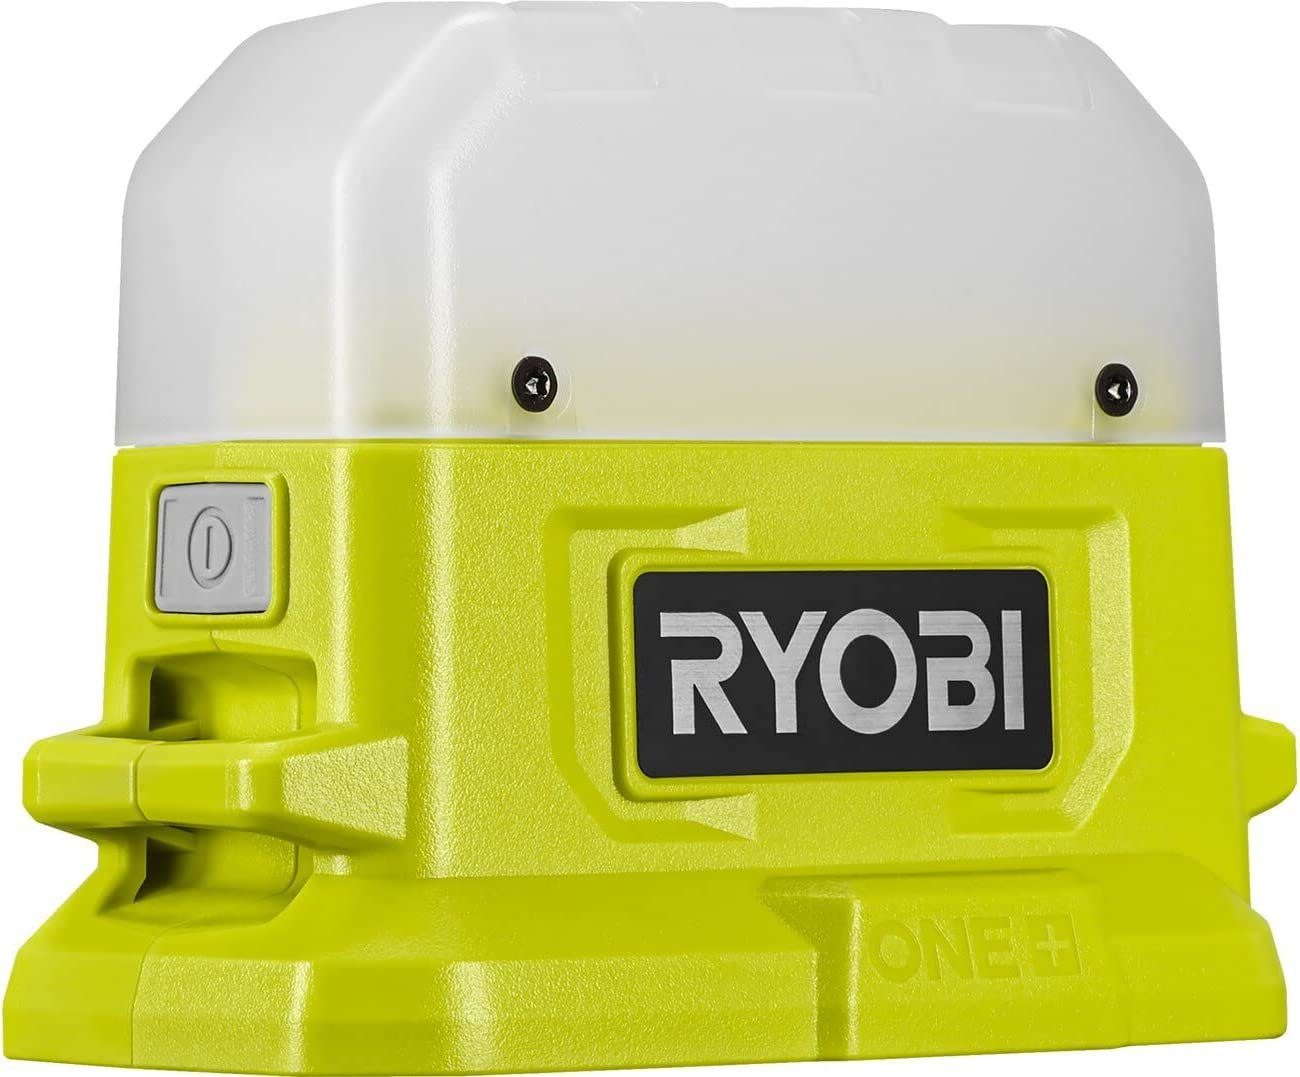 Ryobi Elektrowerkzeug-Set 18V Akku-LED-Leuchte 8-tlg., Werkzeugtasche, ONE+ RLC18-0 inkl. Akkus 2x RAK17SD Ah Bit-SET RCK183D-120S 2,0 RB18L20 Spar-Set, 18V